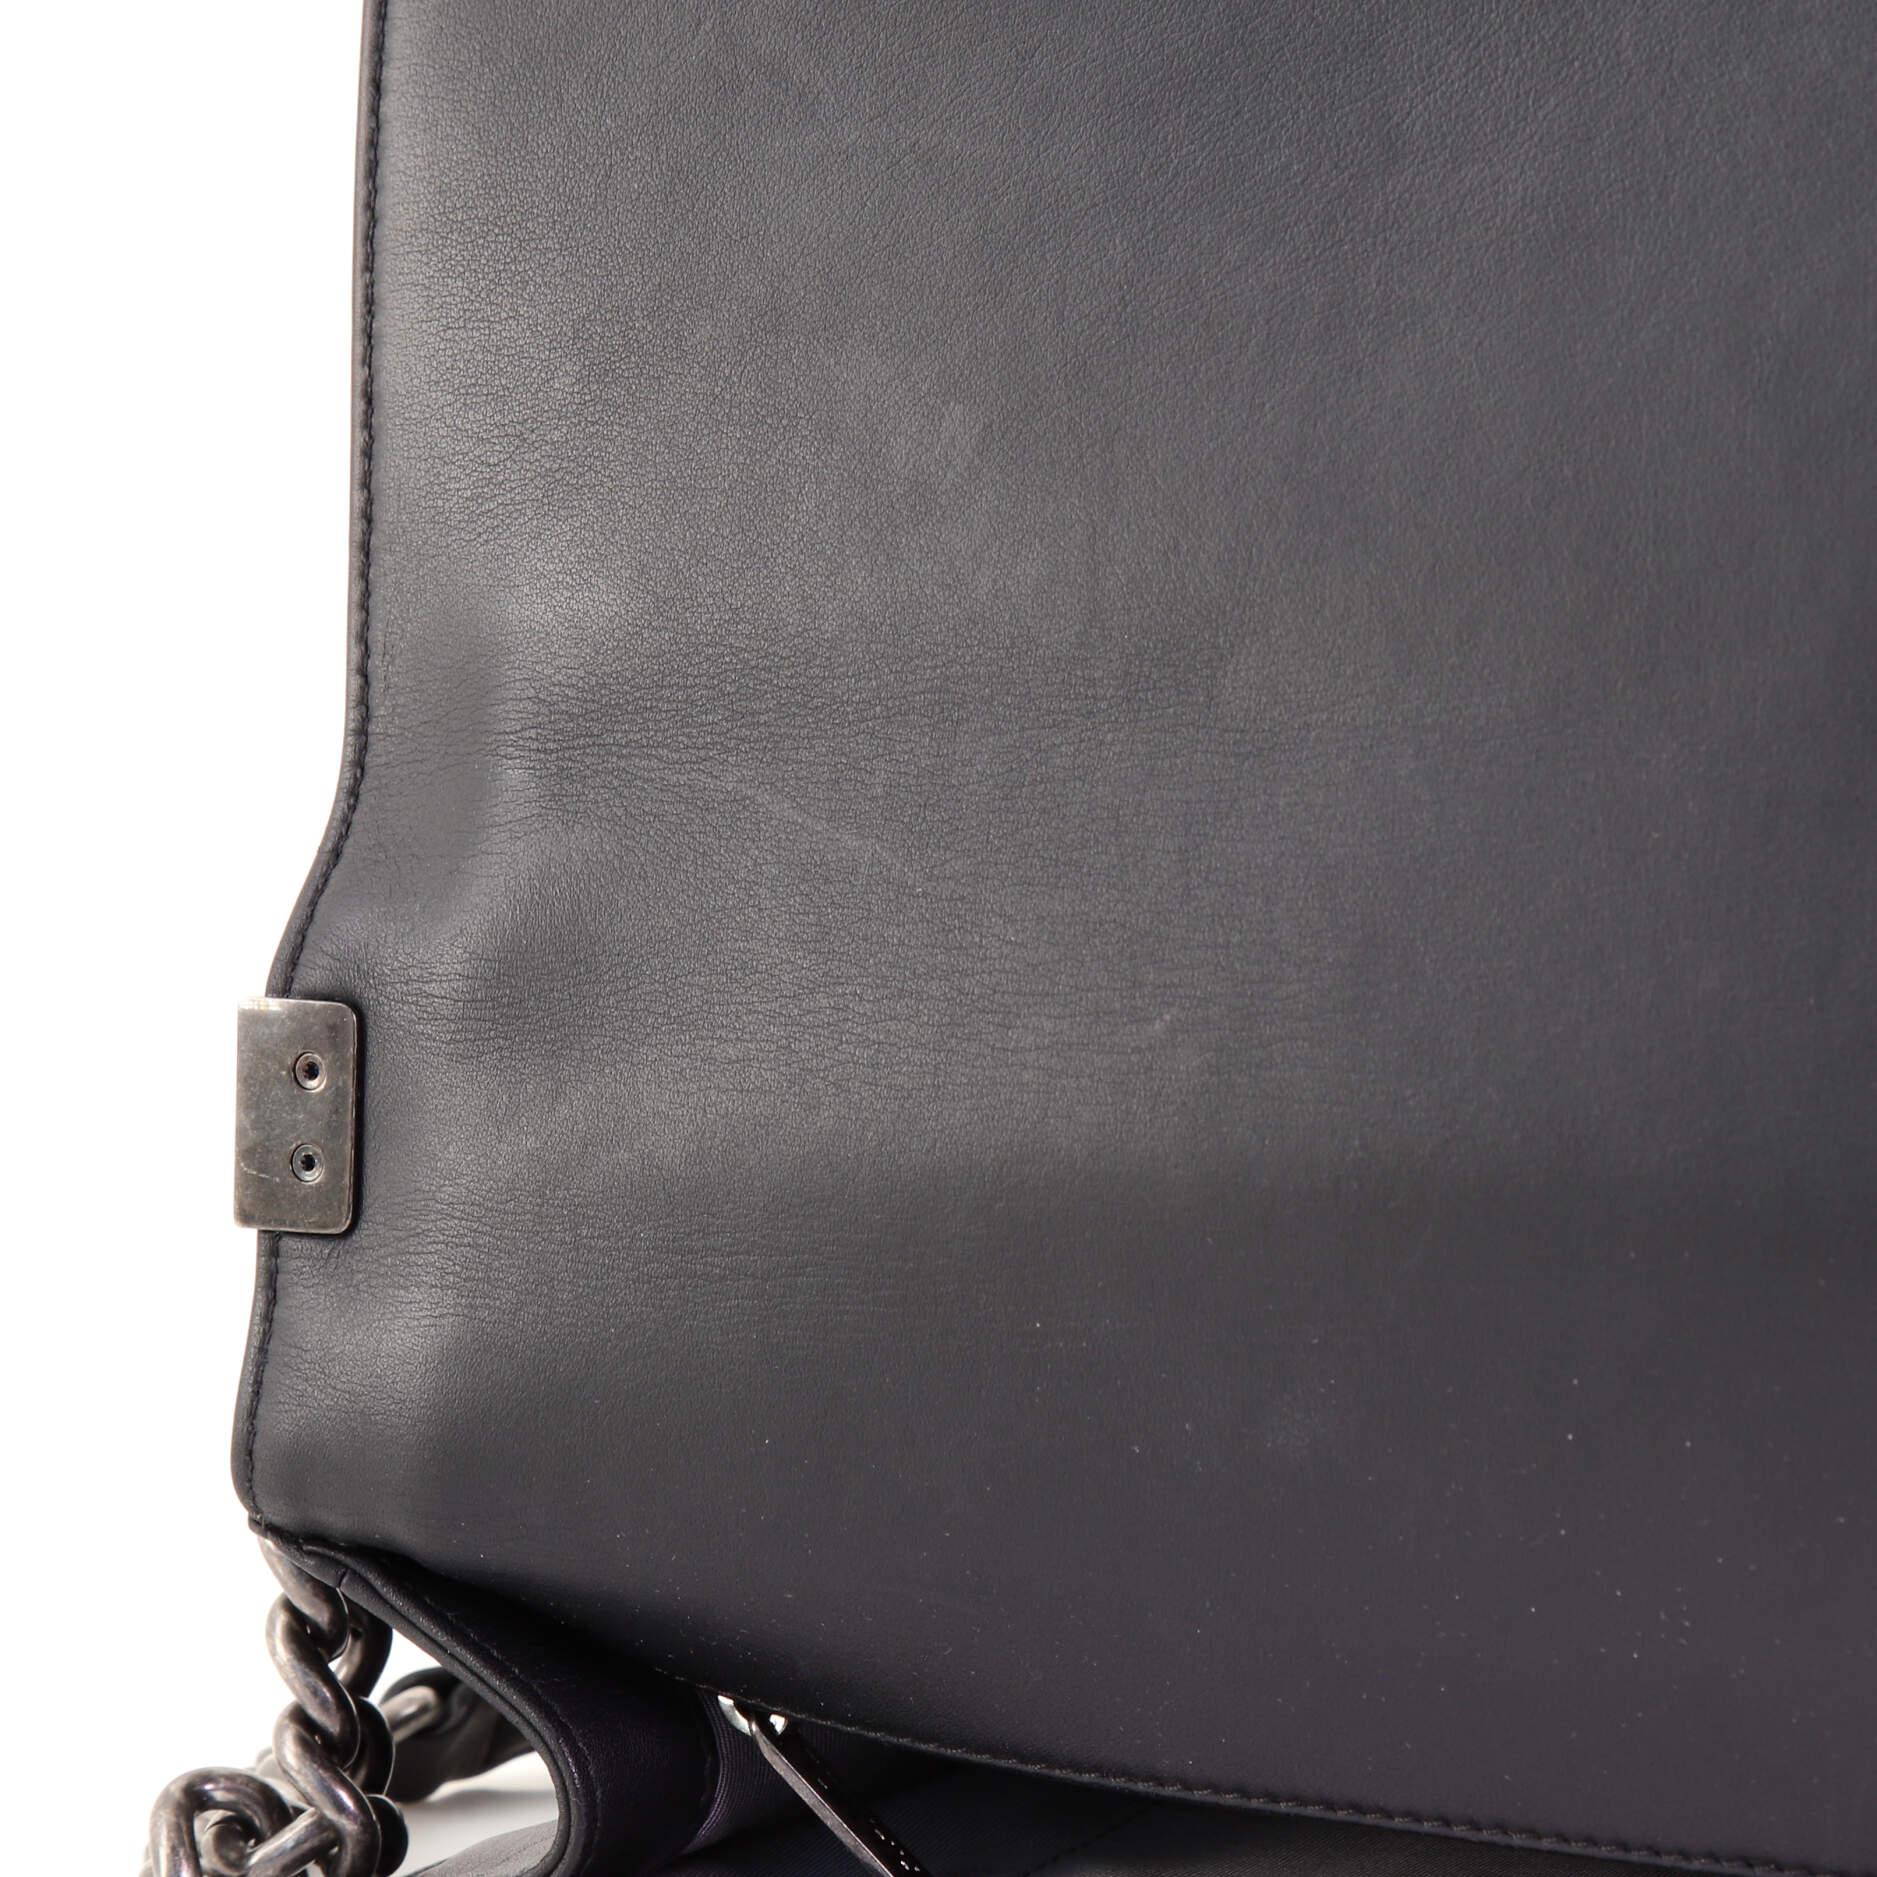 Chanel Boy Flap Bag Quilted Calfskin New Medium 1